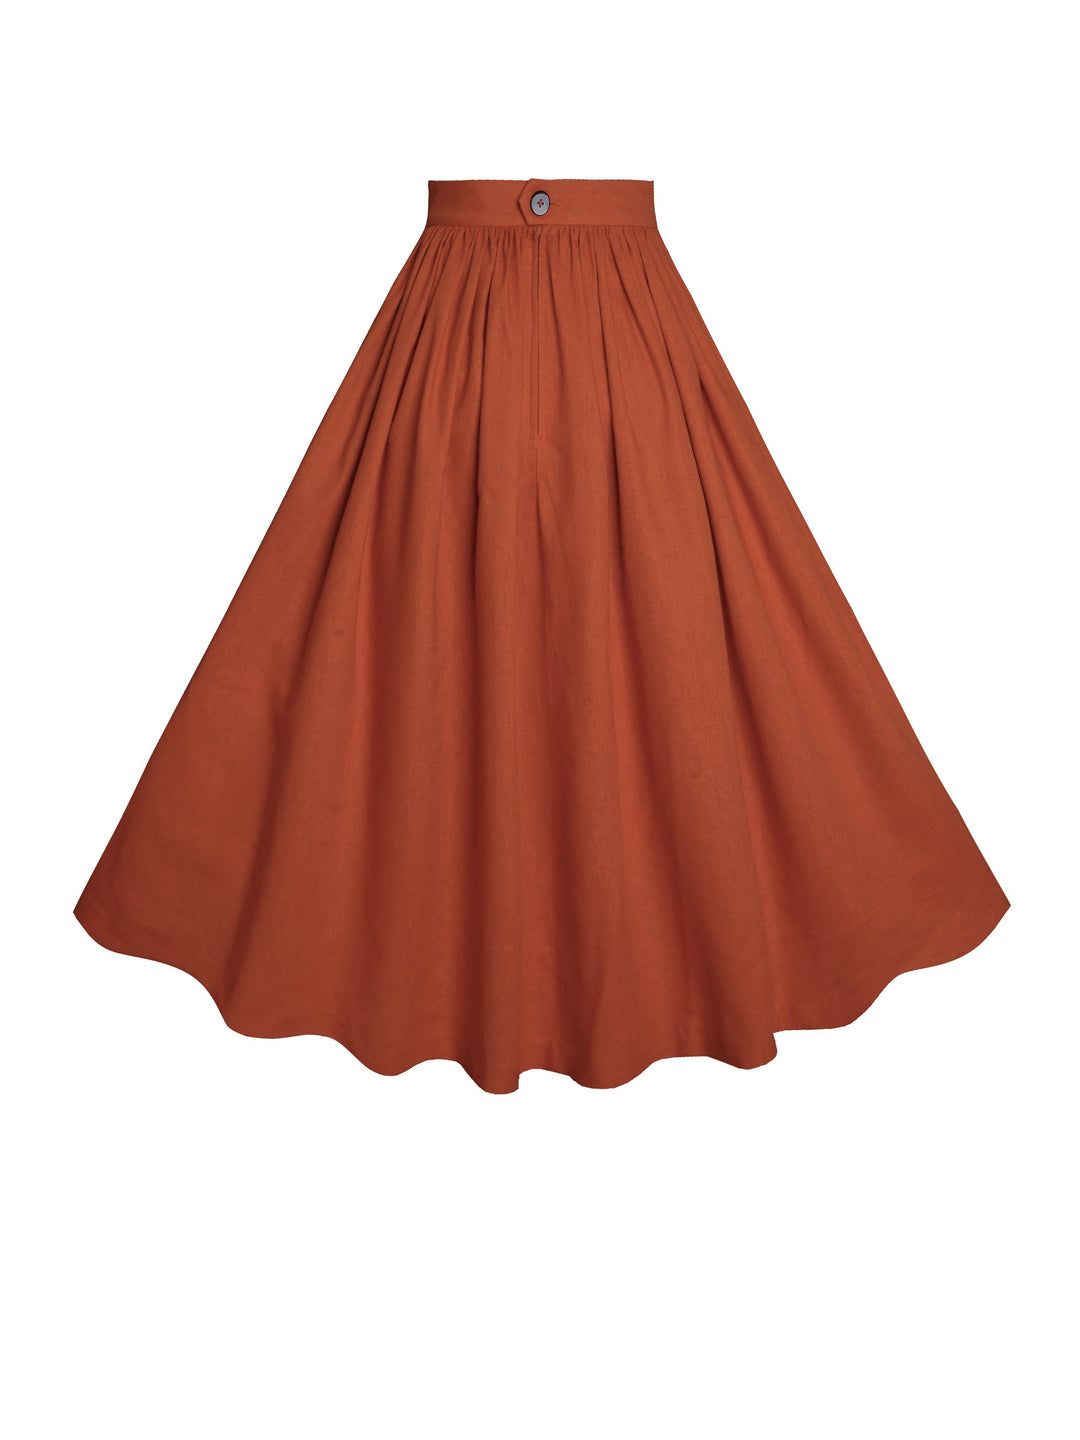 MTO - Lola Skirt in Redwood Linen